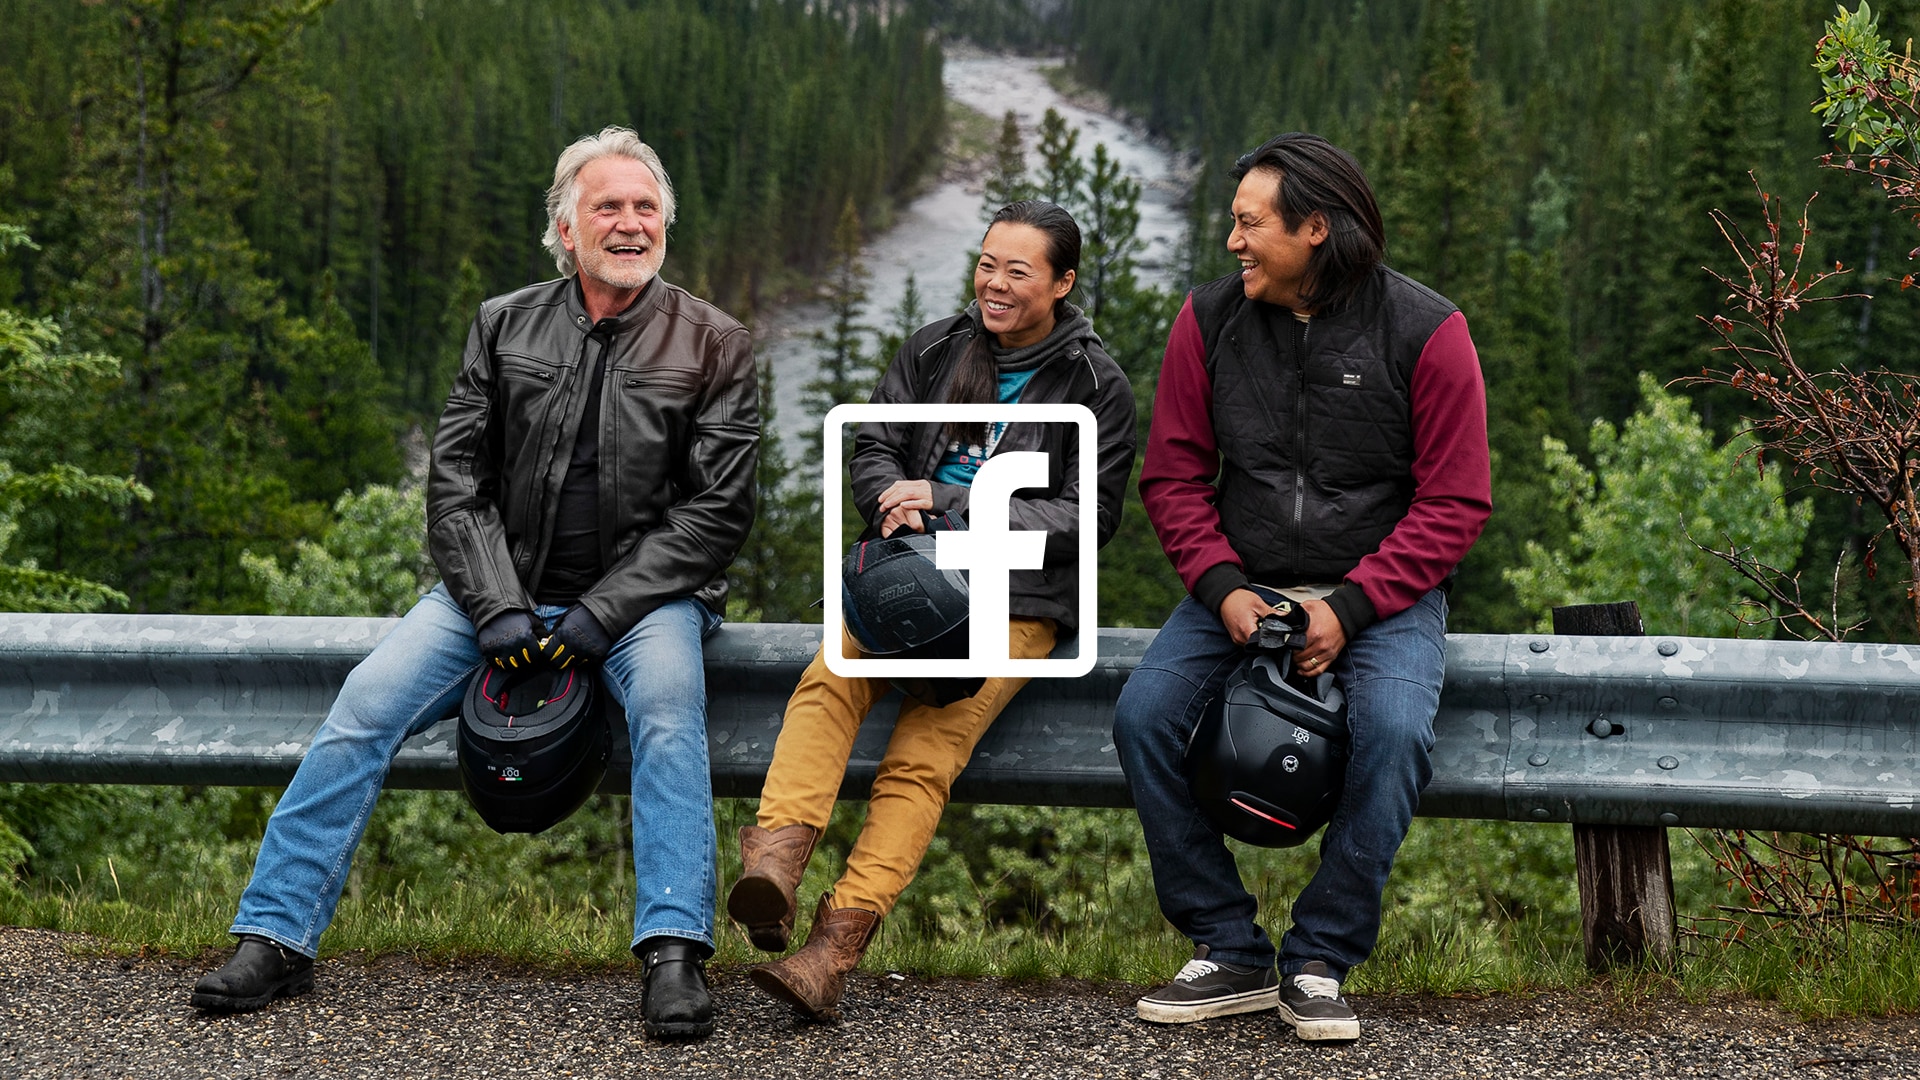 Traja ľudia sa smejú a rozprávajú s Facebookovým logom skrz obrázok